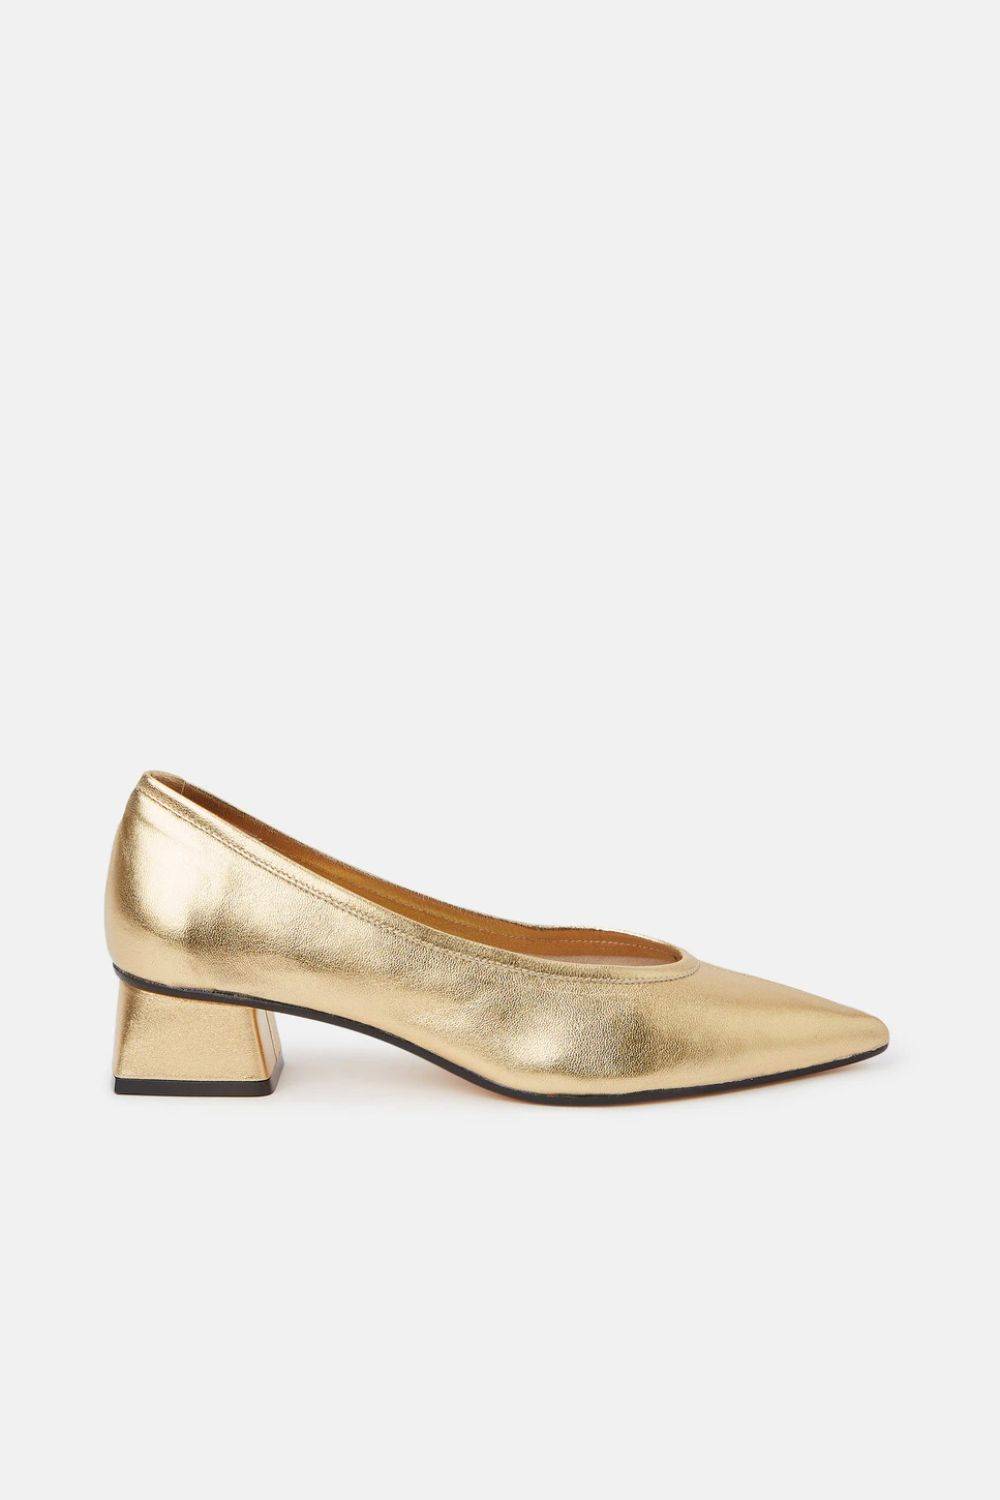 Zapatos de tacón bajo elegantes Latouche de mujer en color oro con puntera afilada y tacón bloque.